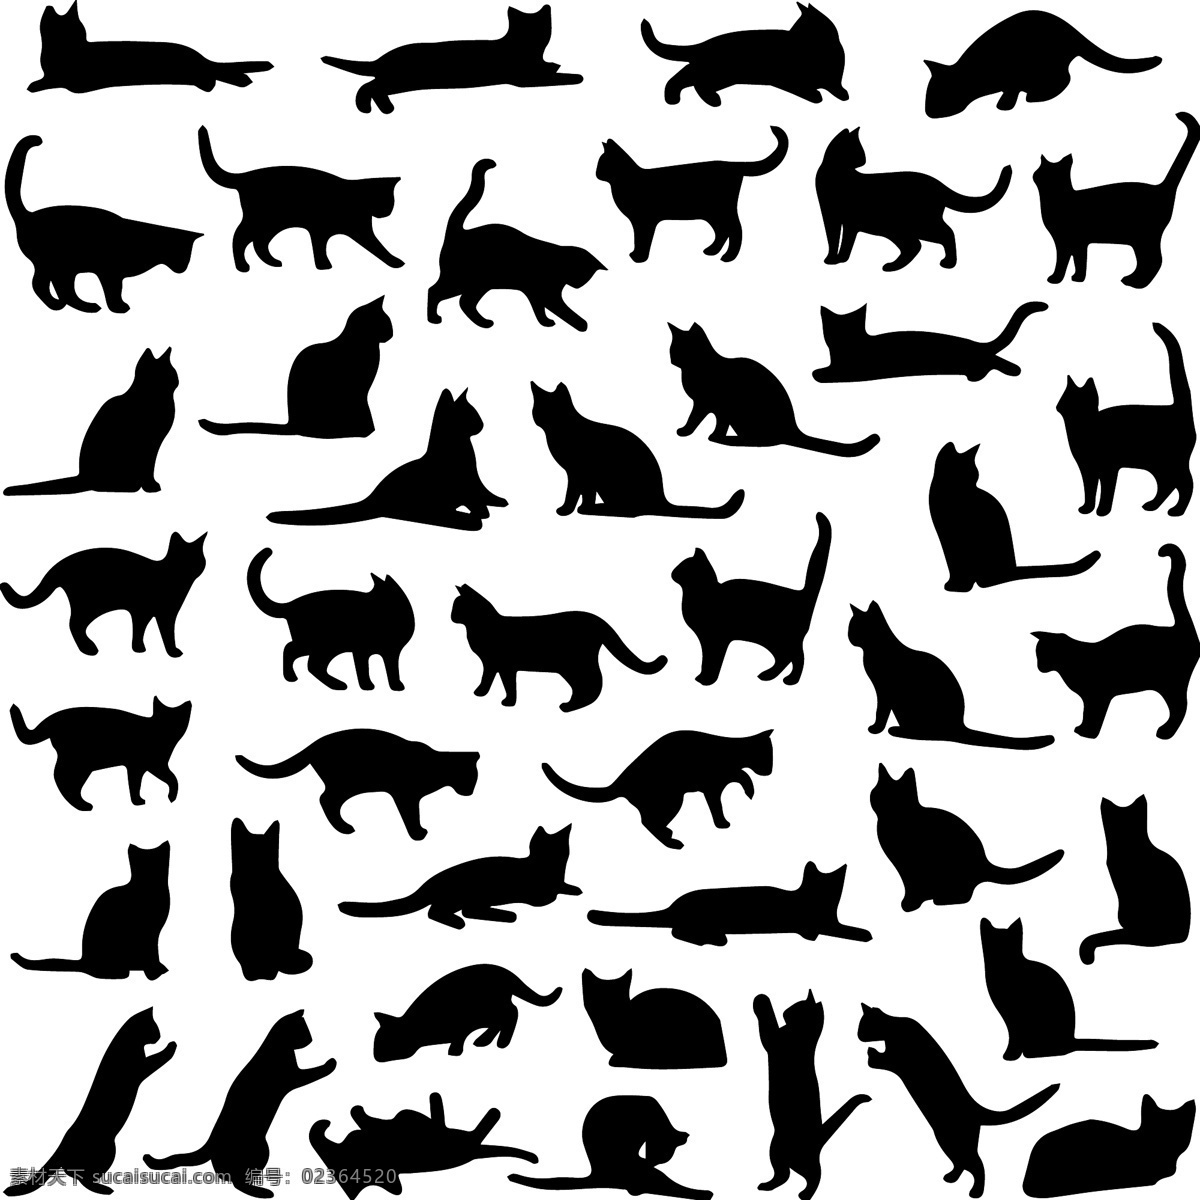 猫咪 猫咪剪影 黑色 剪影 猫 小猫 宠物 动物 卡通 插画 背景 海报 画册 矢量动物 家禽家畜 生物世界 平面设计素材